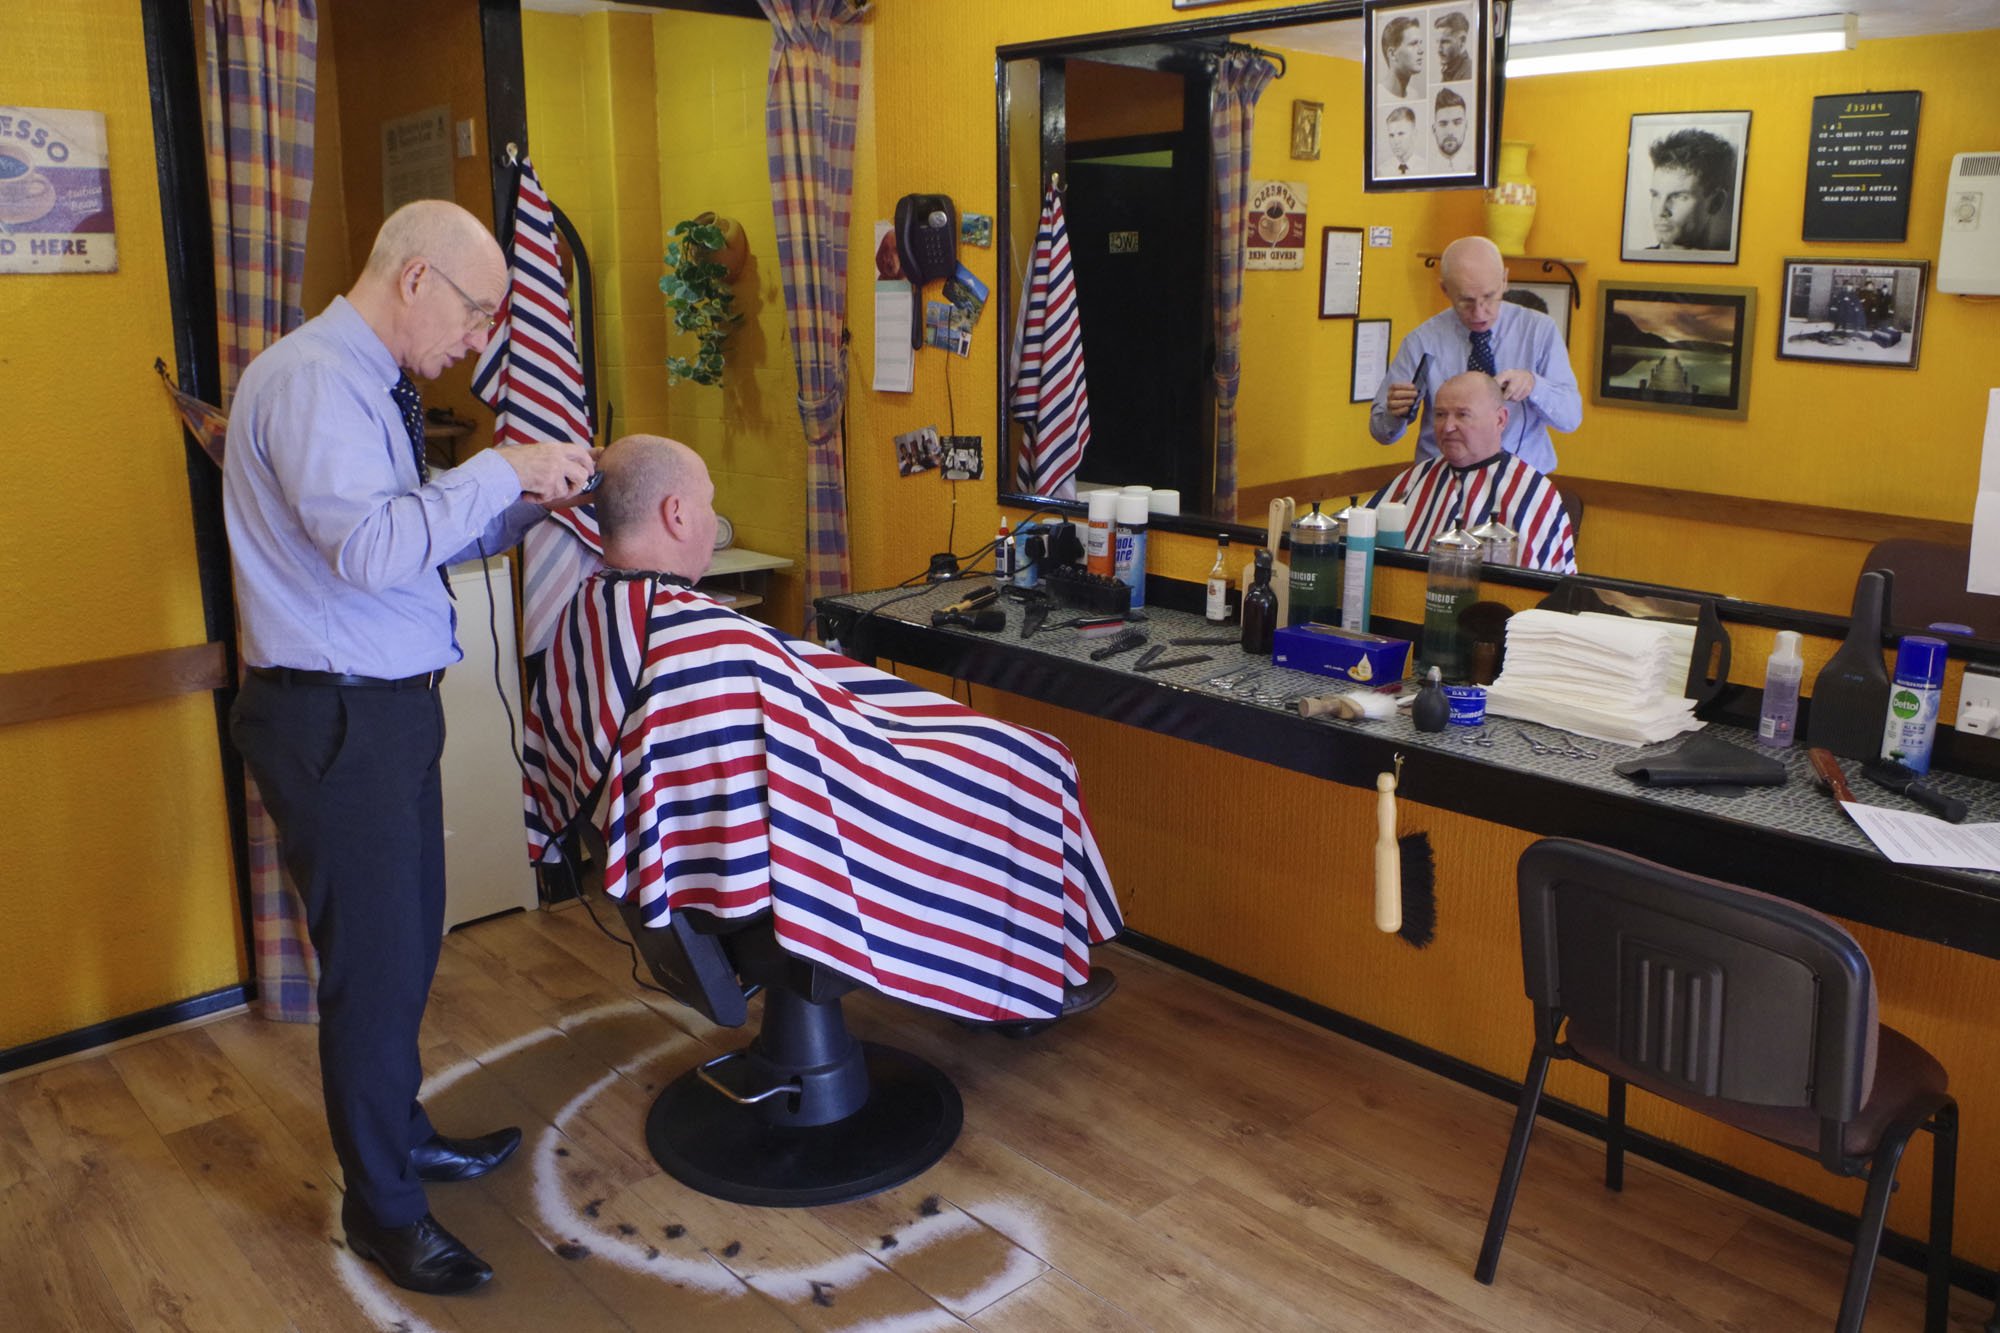 A man getting his hair cut by a barbe.